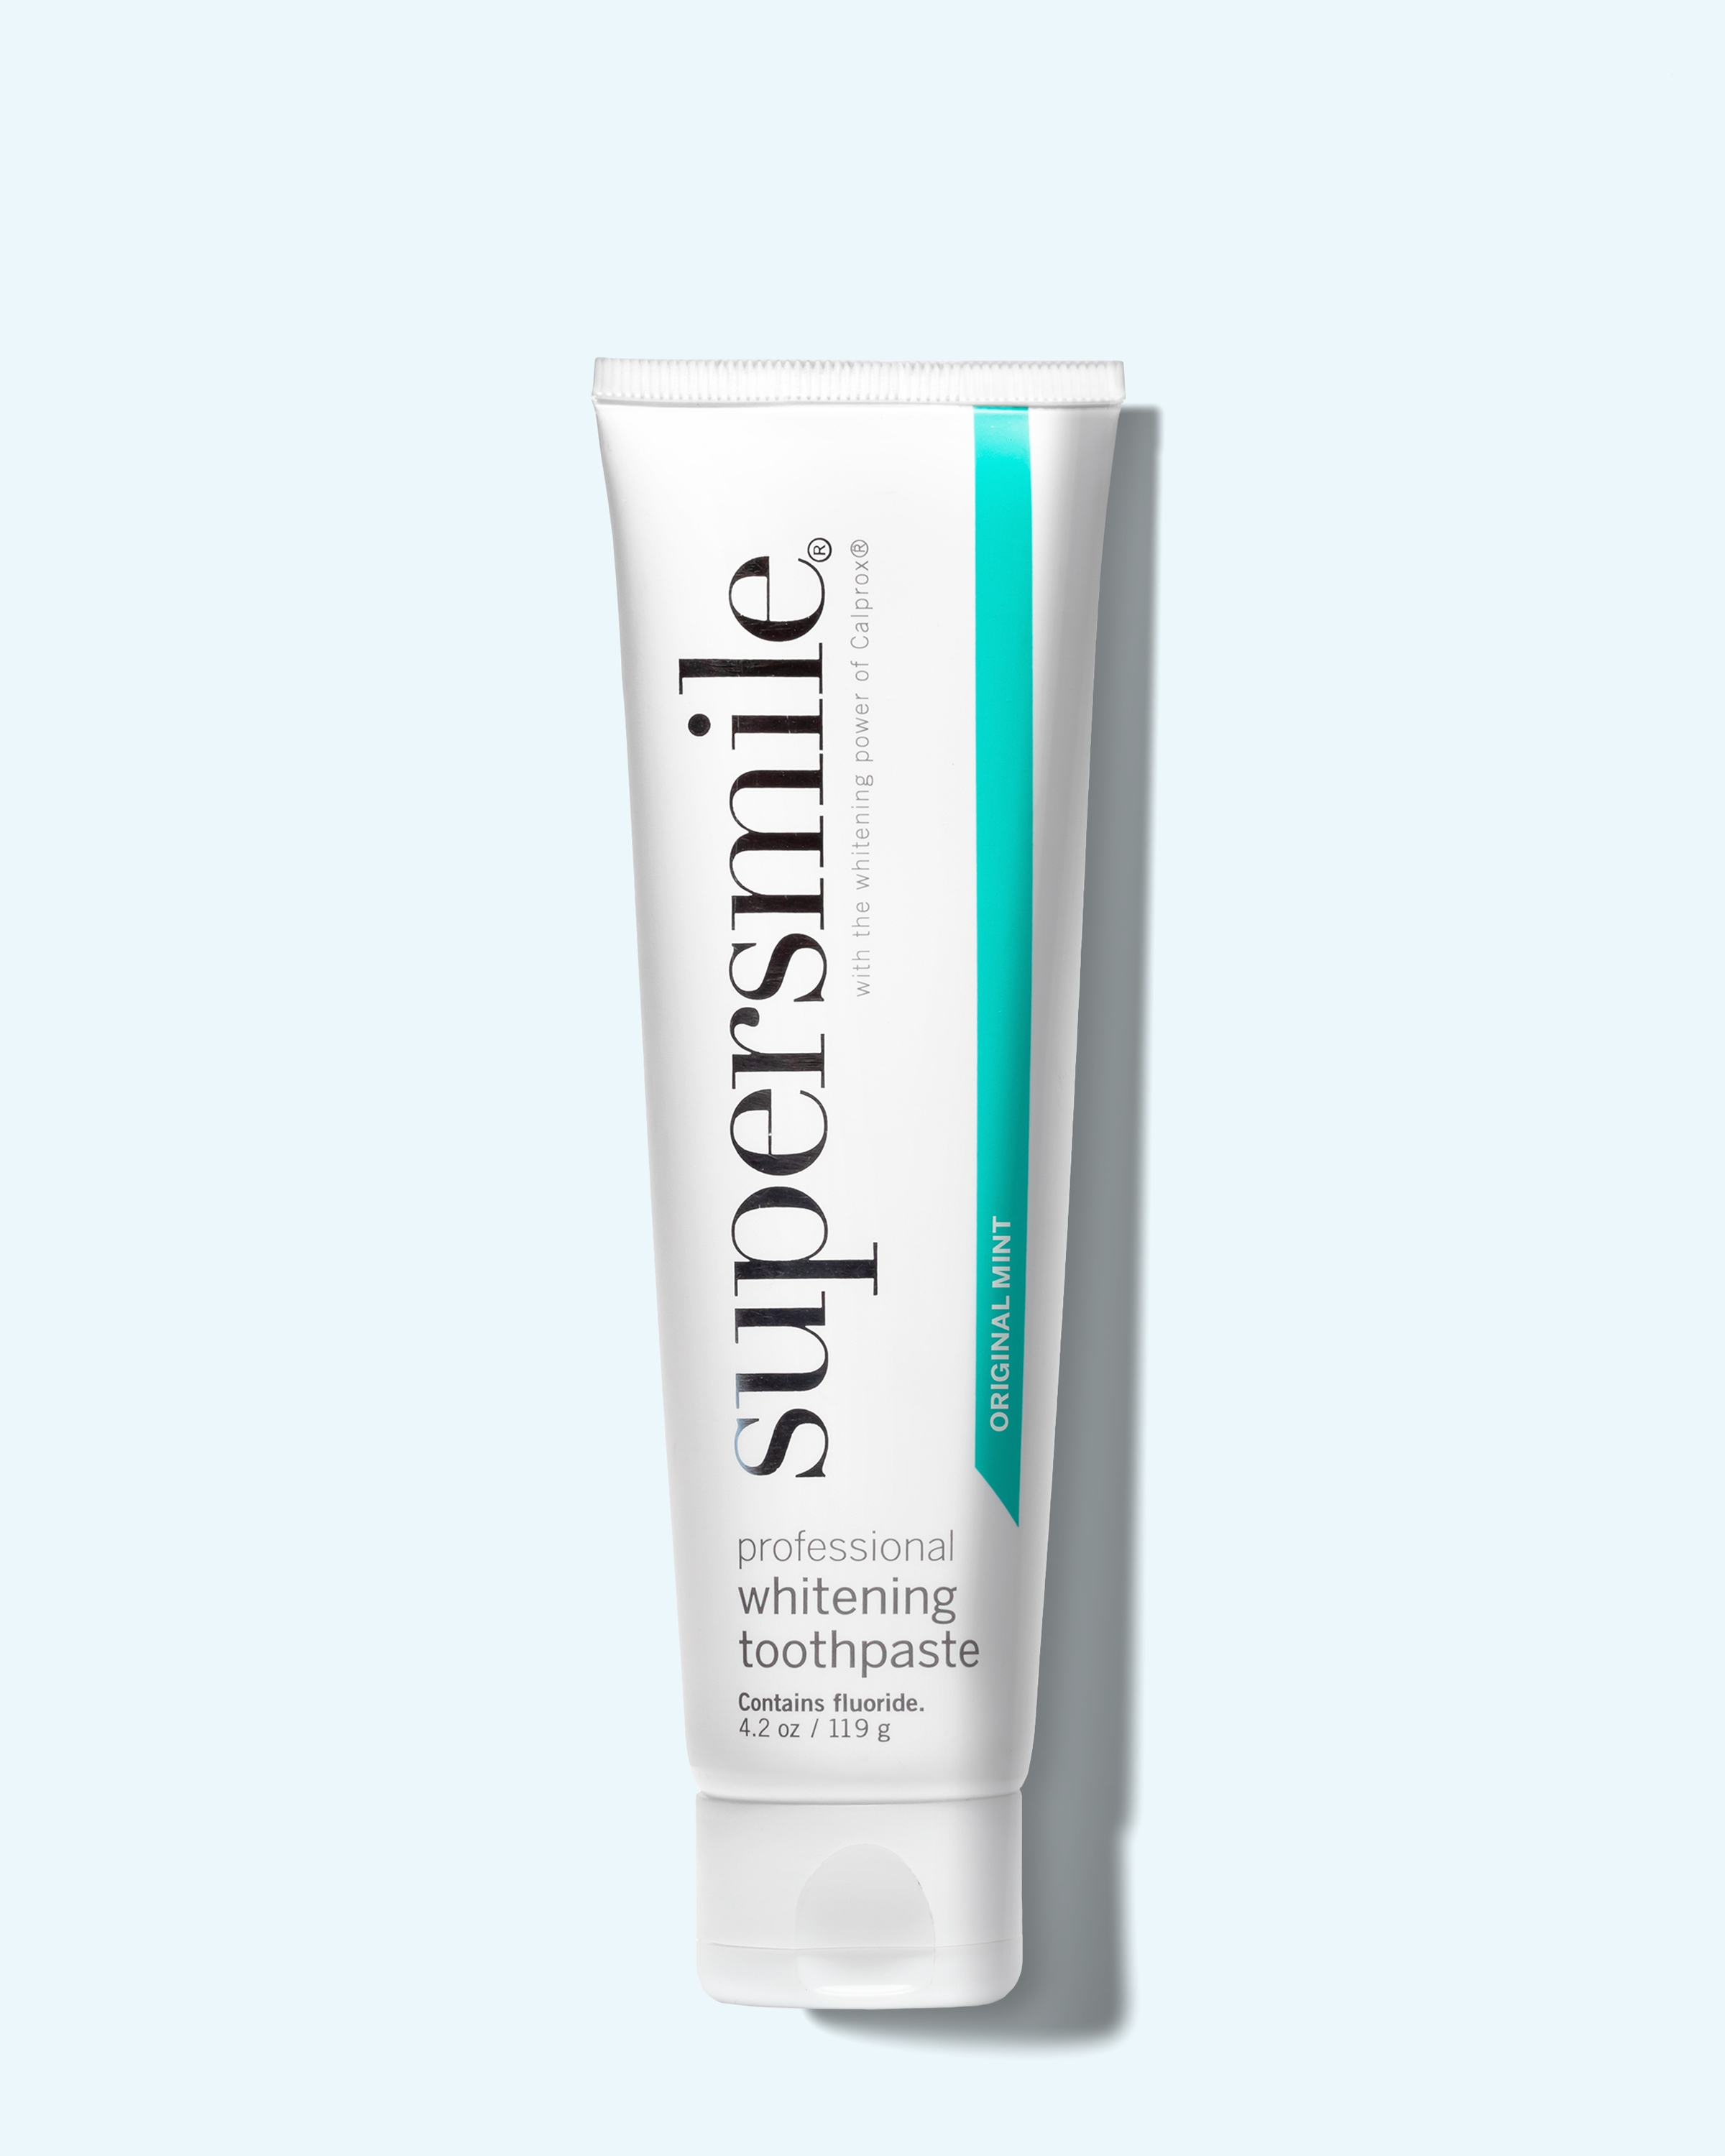 whitening toothpaste (4.2oz)